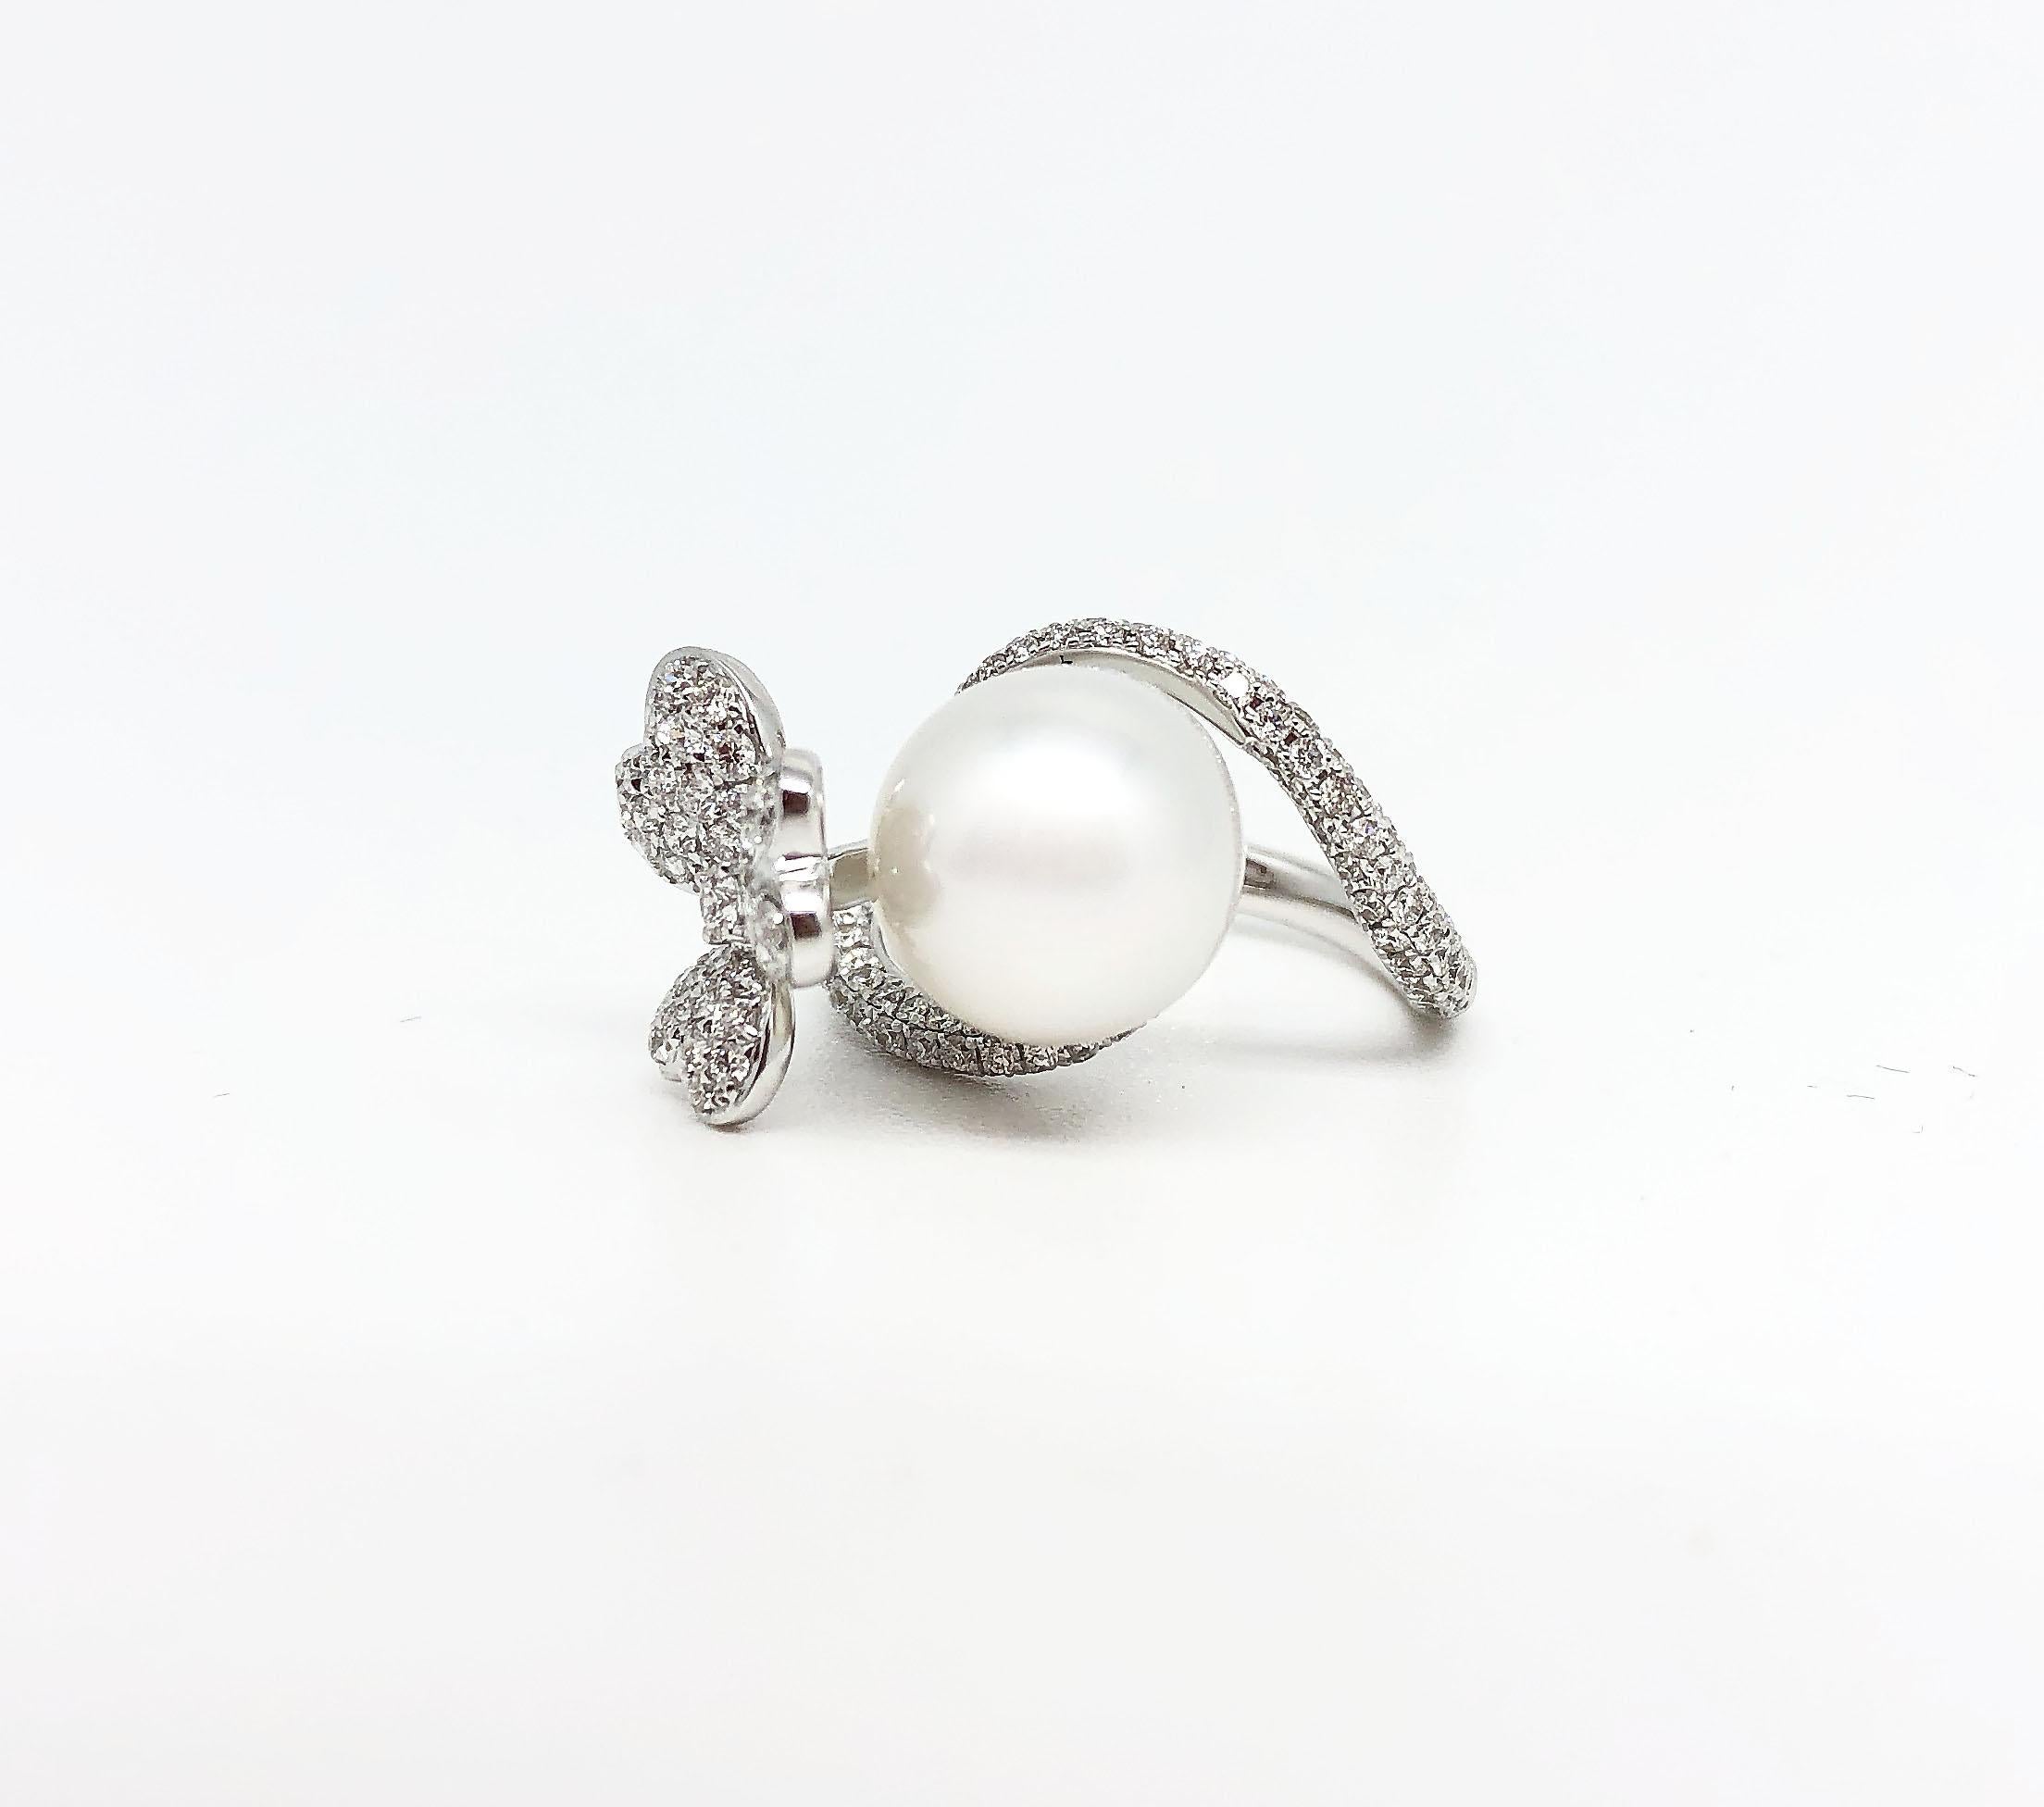 Cette ravissante bague met en vedette une magnifique perle blanche de Southsea de 11 mm au bel éclat et à la forme presque ronde, accompagnée de diamants de 1,11 carat. Le motif fleuri est le cadeau idéal à offrir tout au long de l'année et est